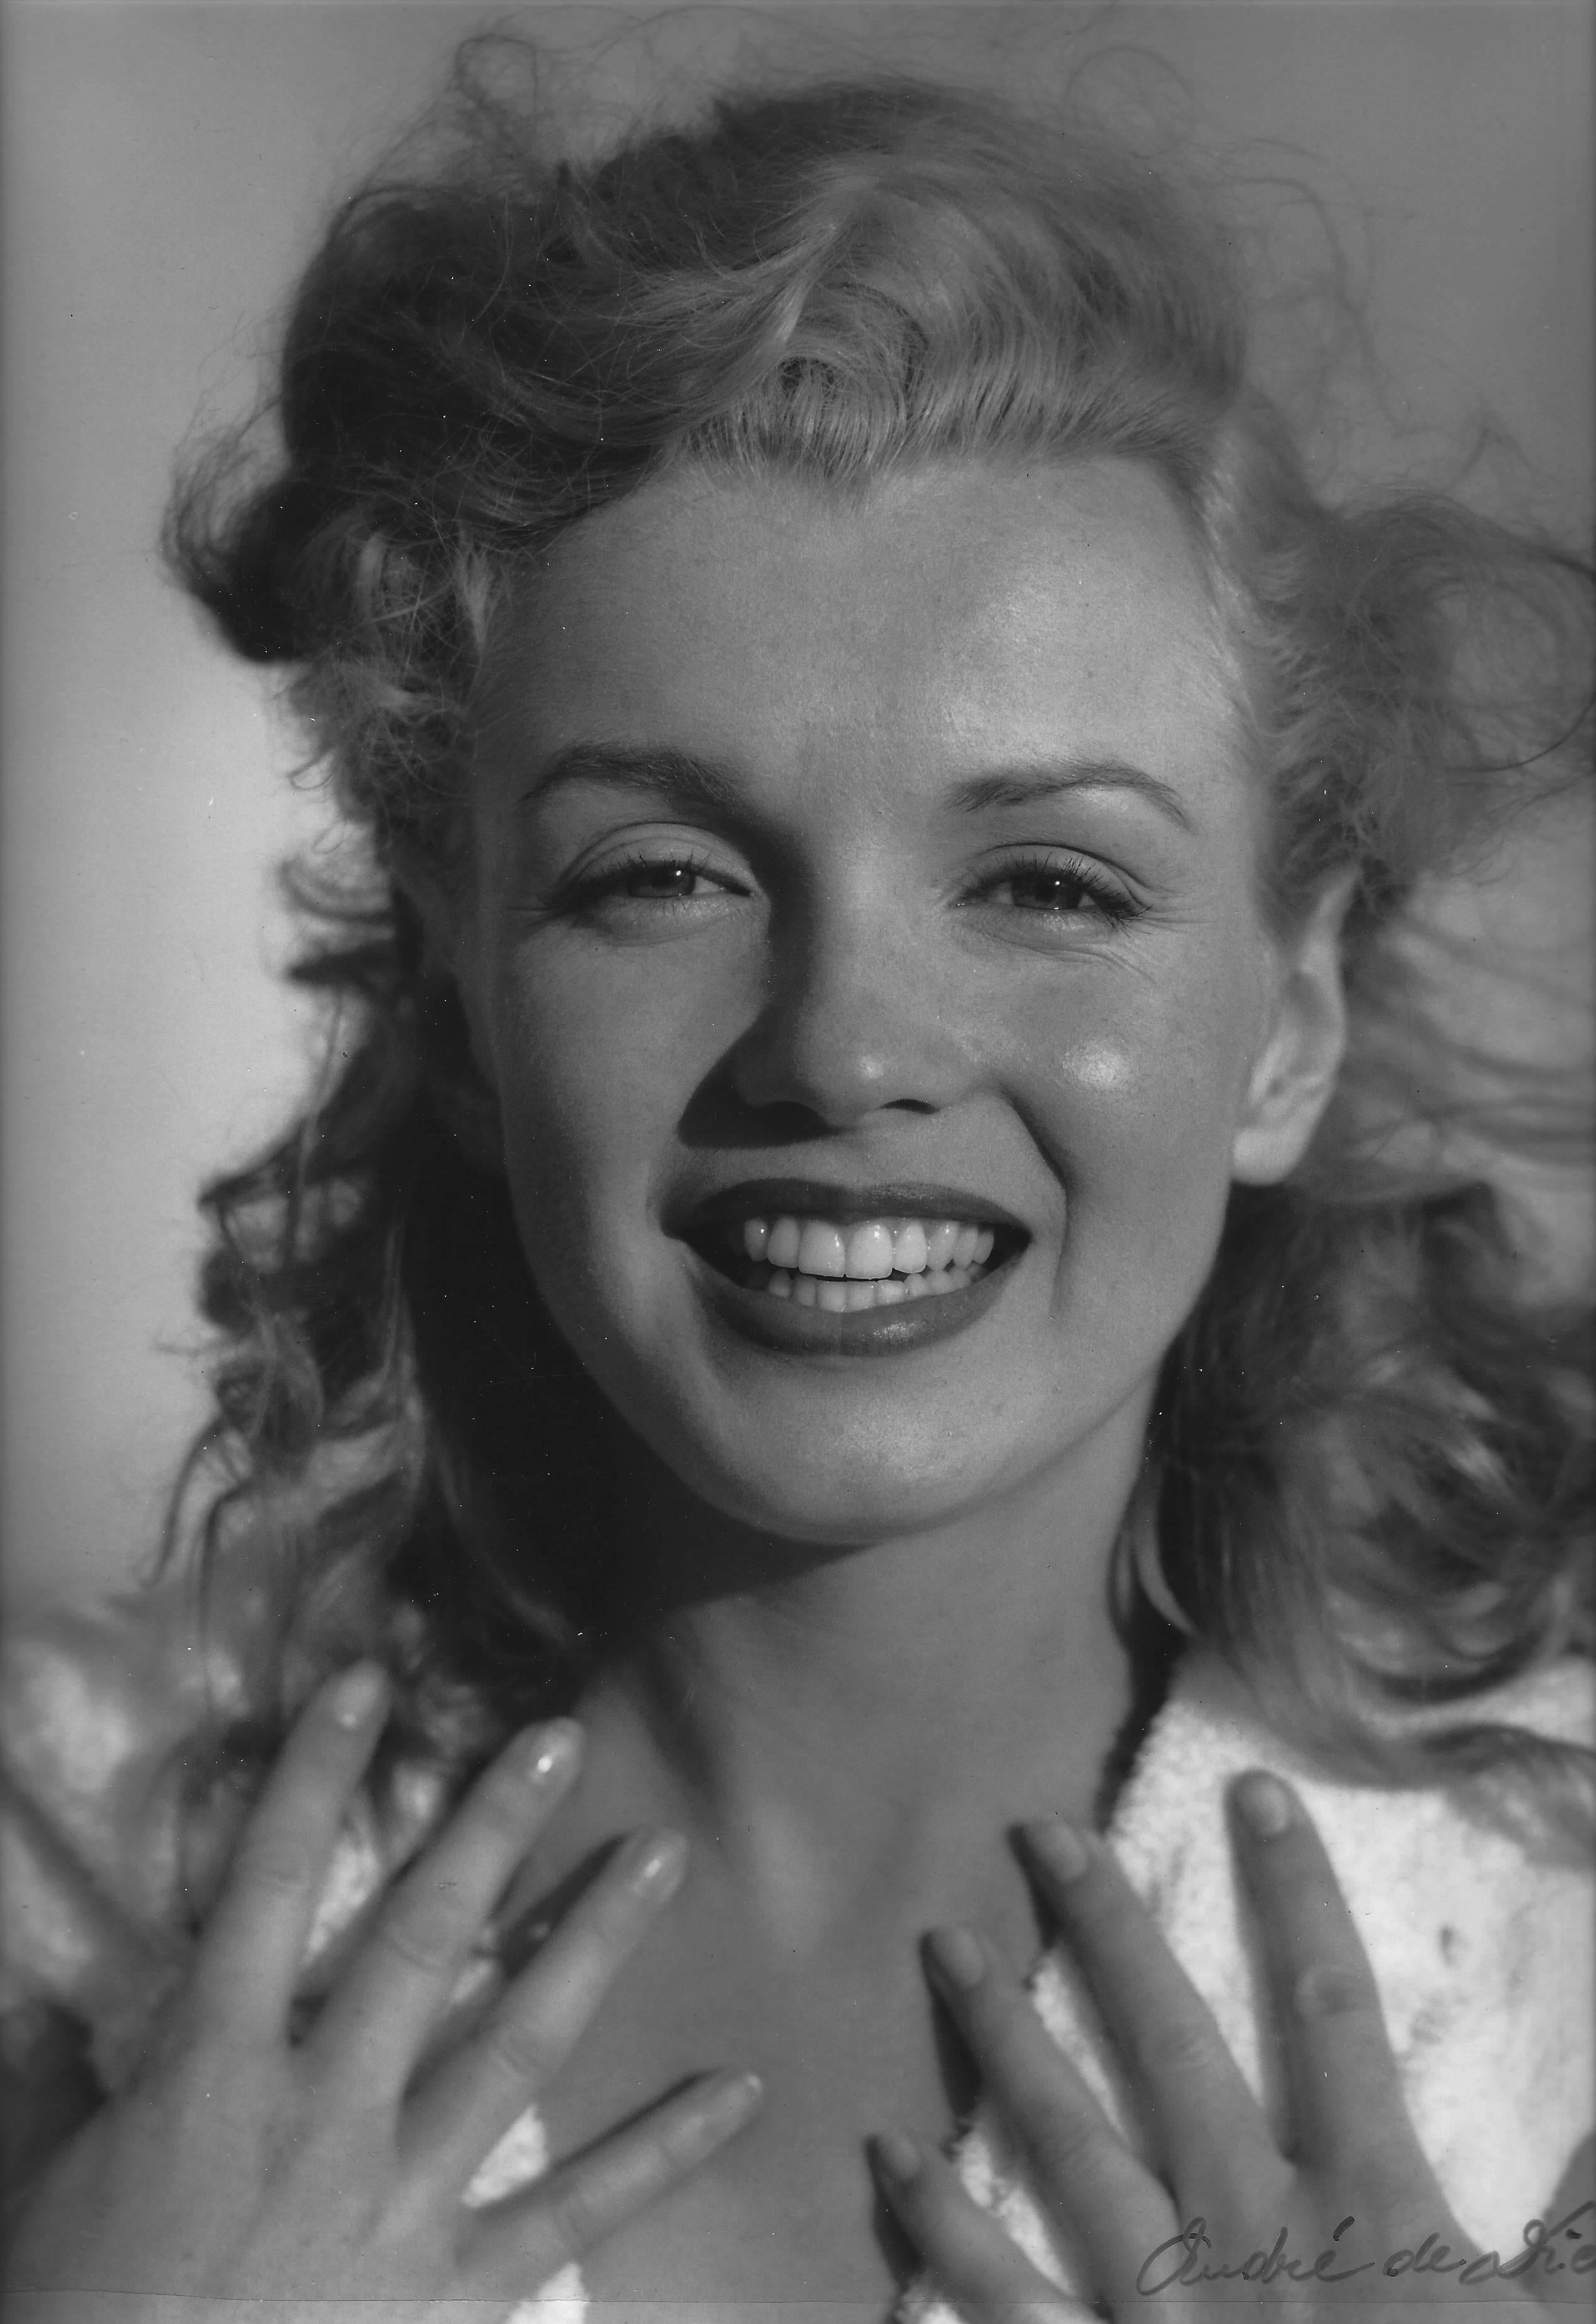 Andre de Dienes Portrait Photograph - Marilyn Monroe Close up, Vintage Original Print 